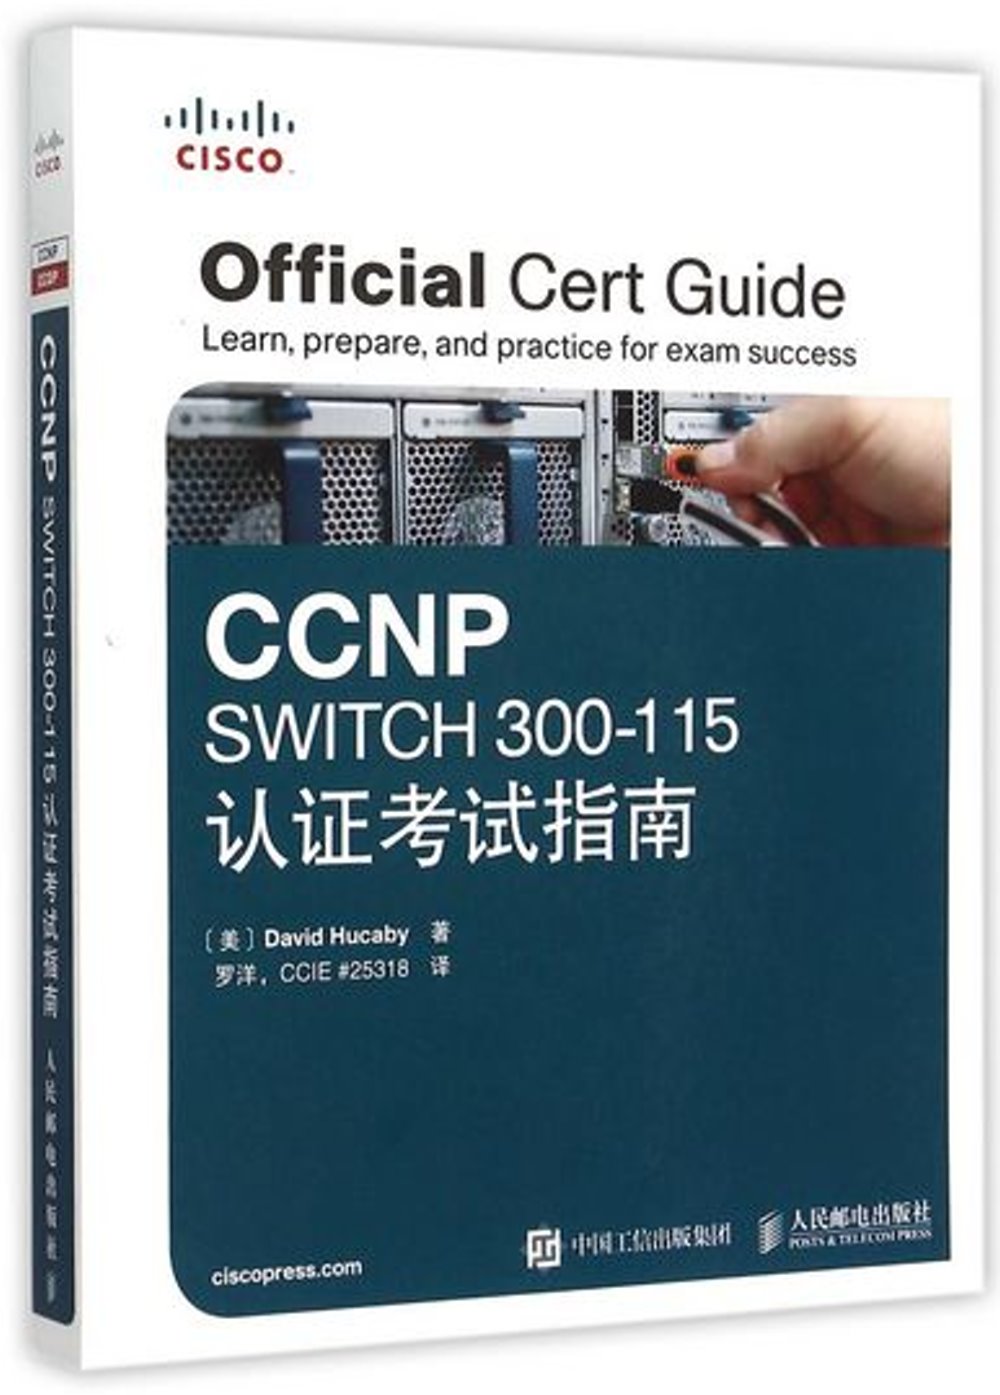 CCNP SWITCH 300-115認證考試指南